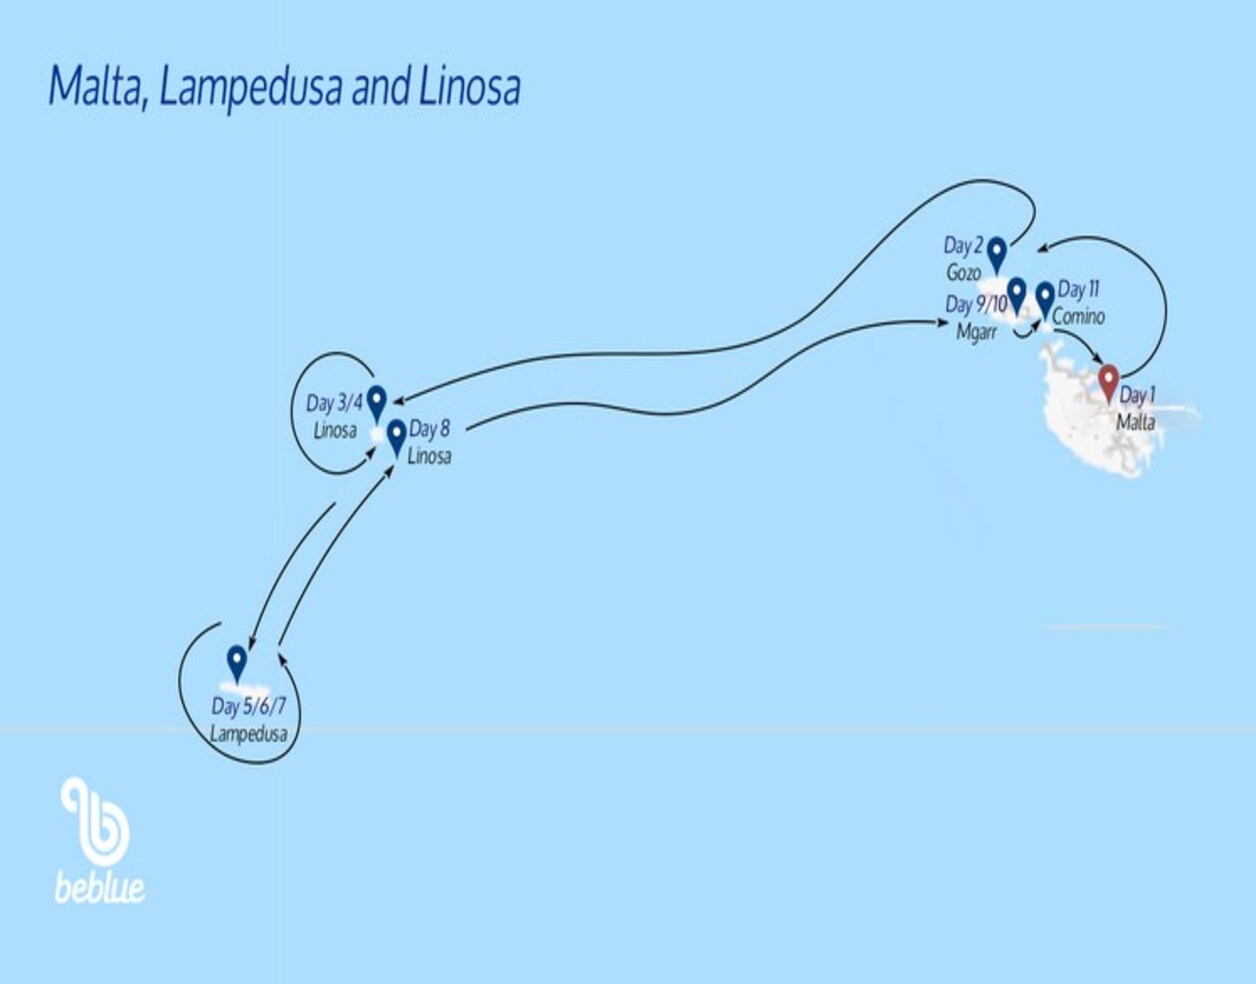 Malta, Lampedusa and Linosa Flotilla - ID 135